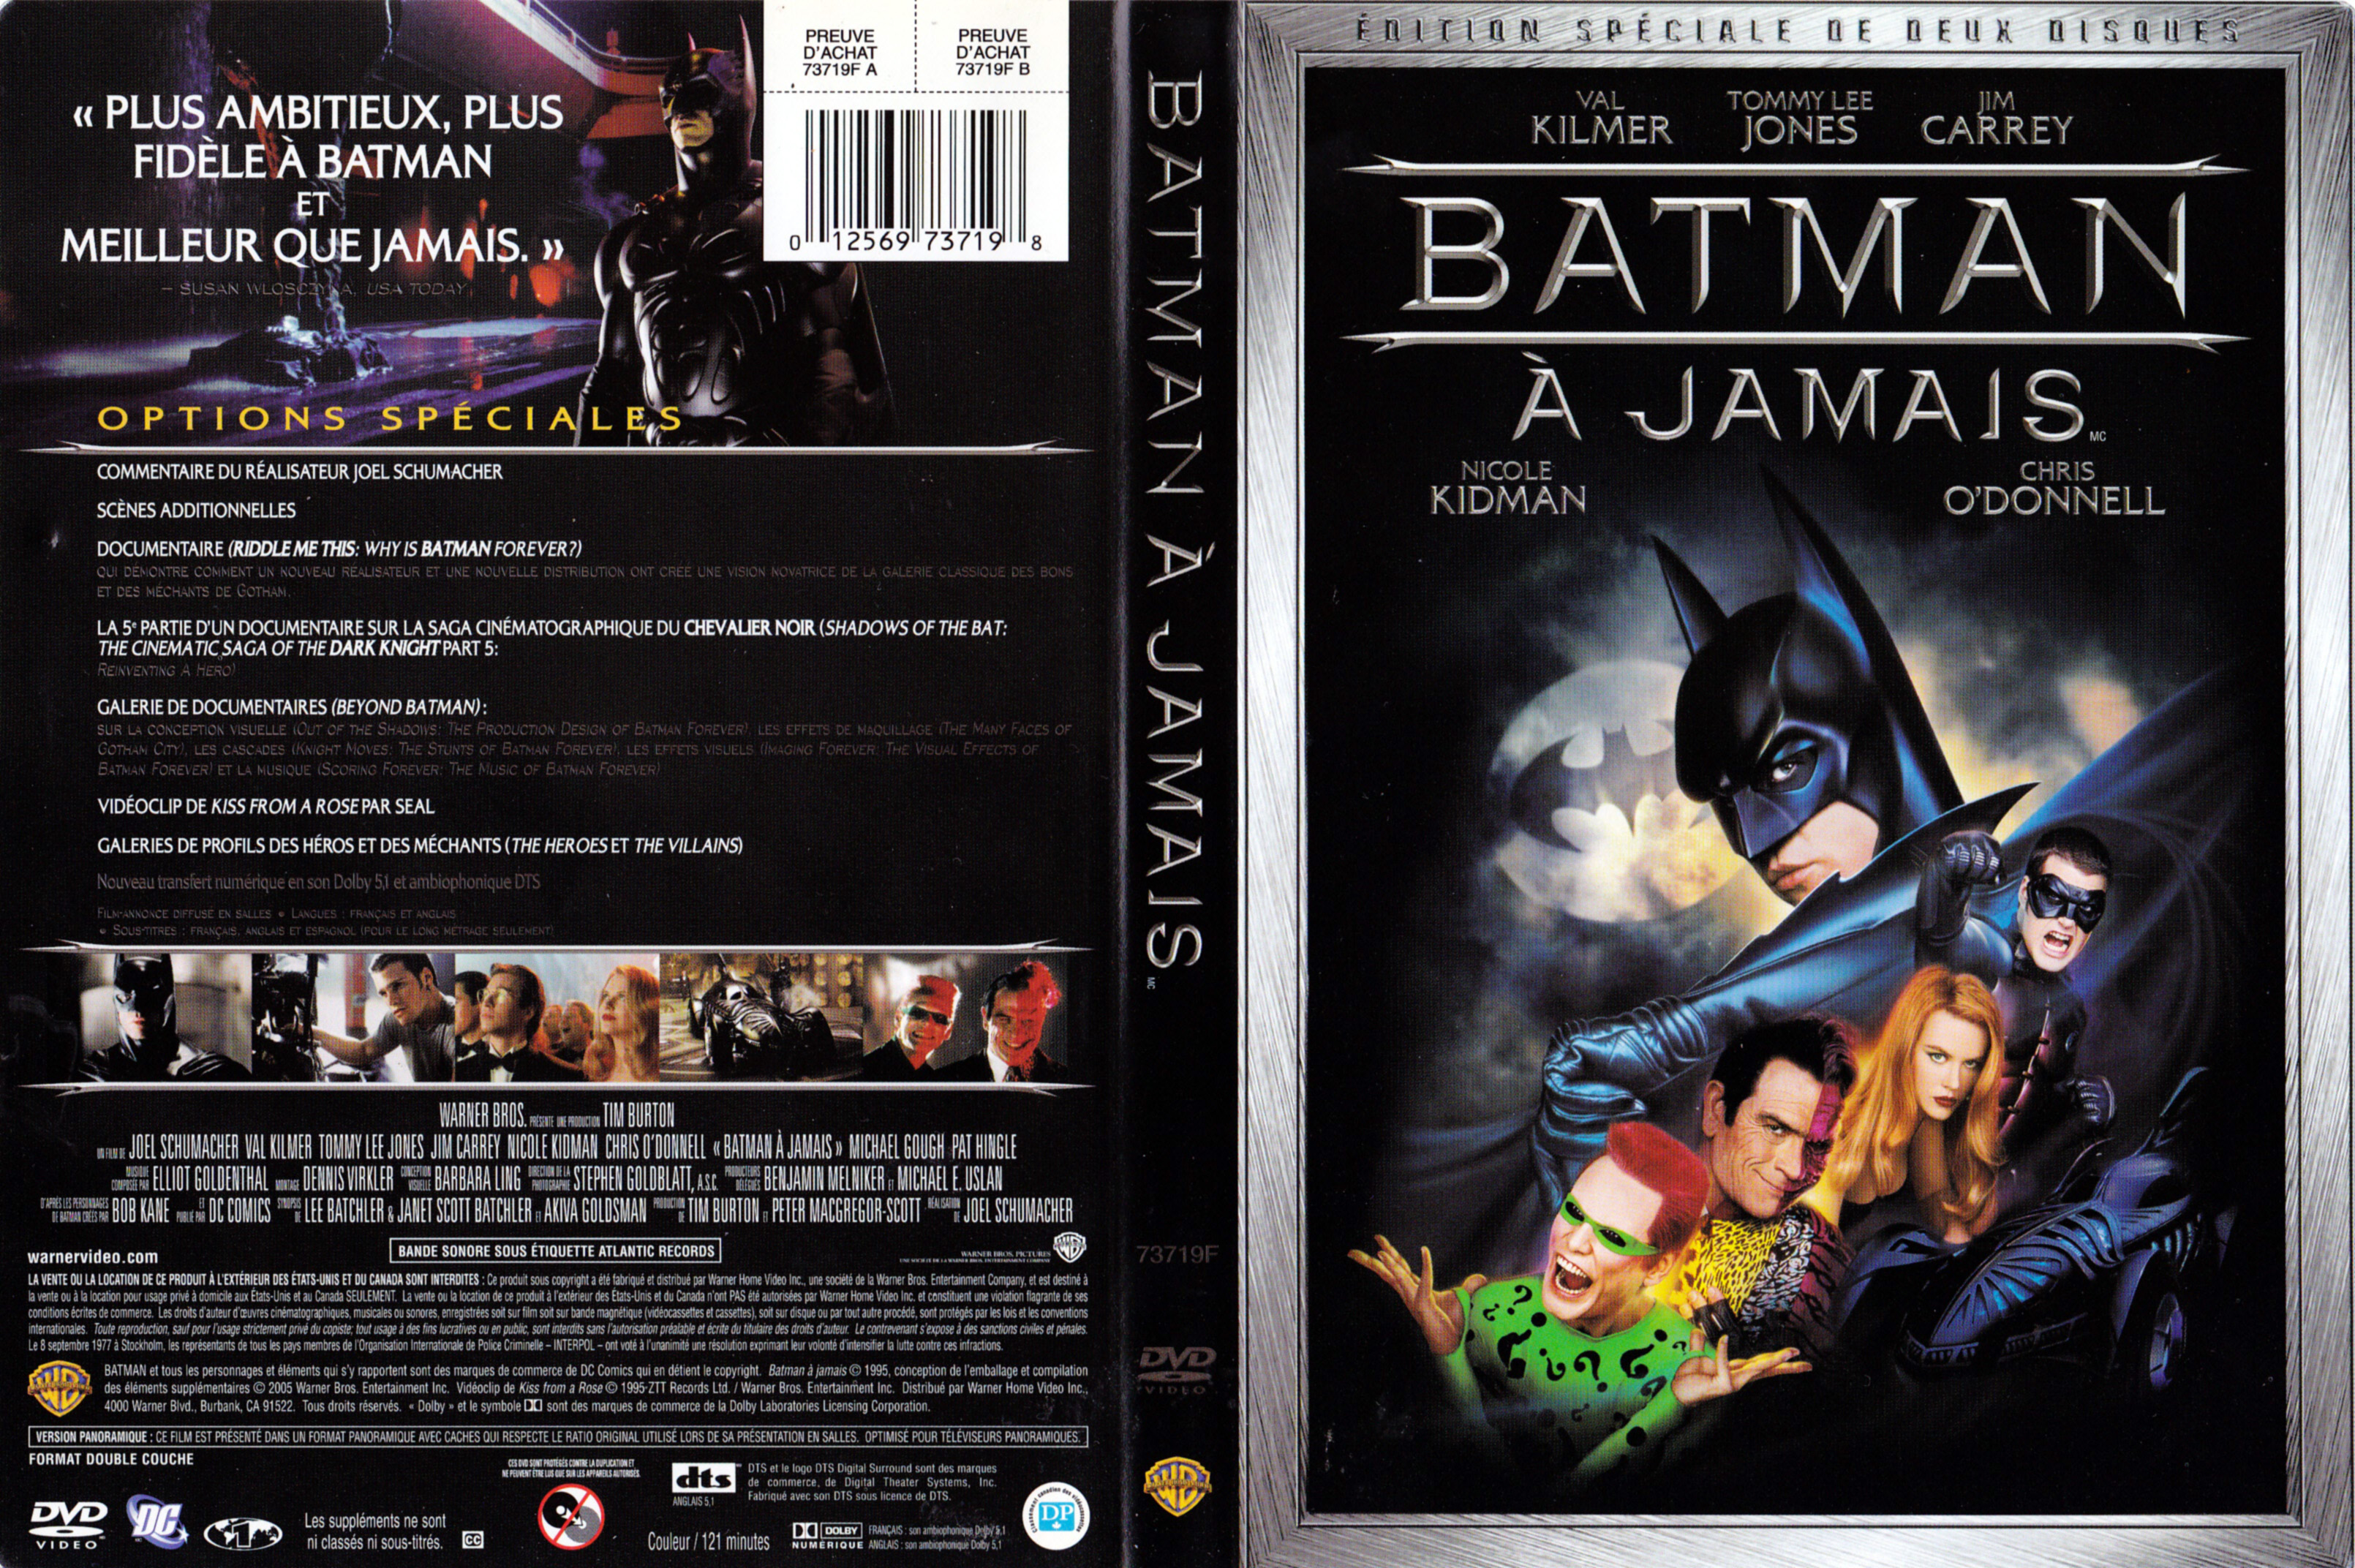 Jaquette DVD Batman  jamais (Canadienne)